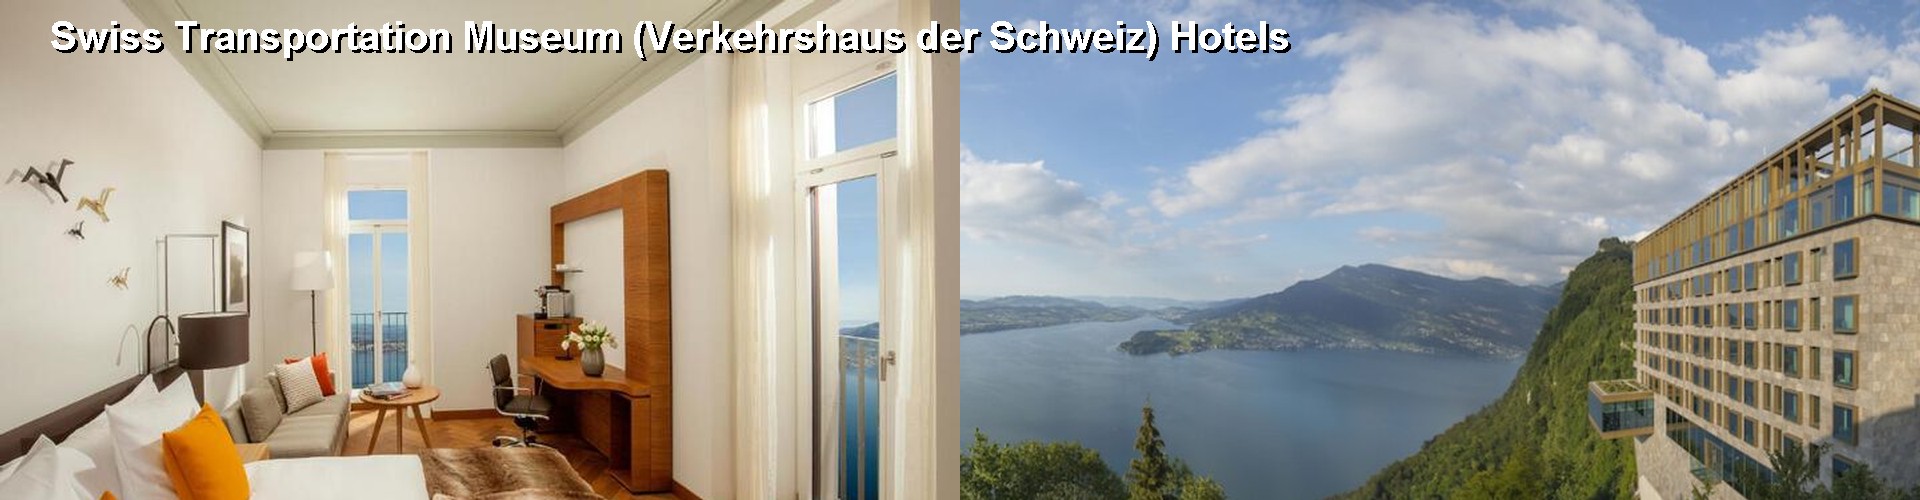 5 Best Hotels near Swiss Transportation Museum (Verkehrshaus der Schweiz)